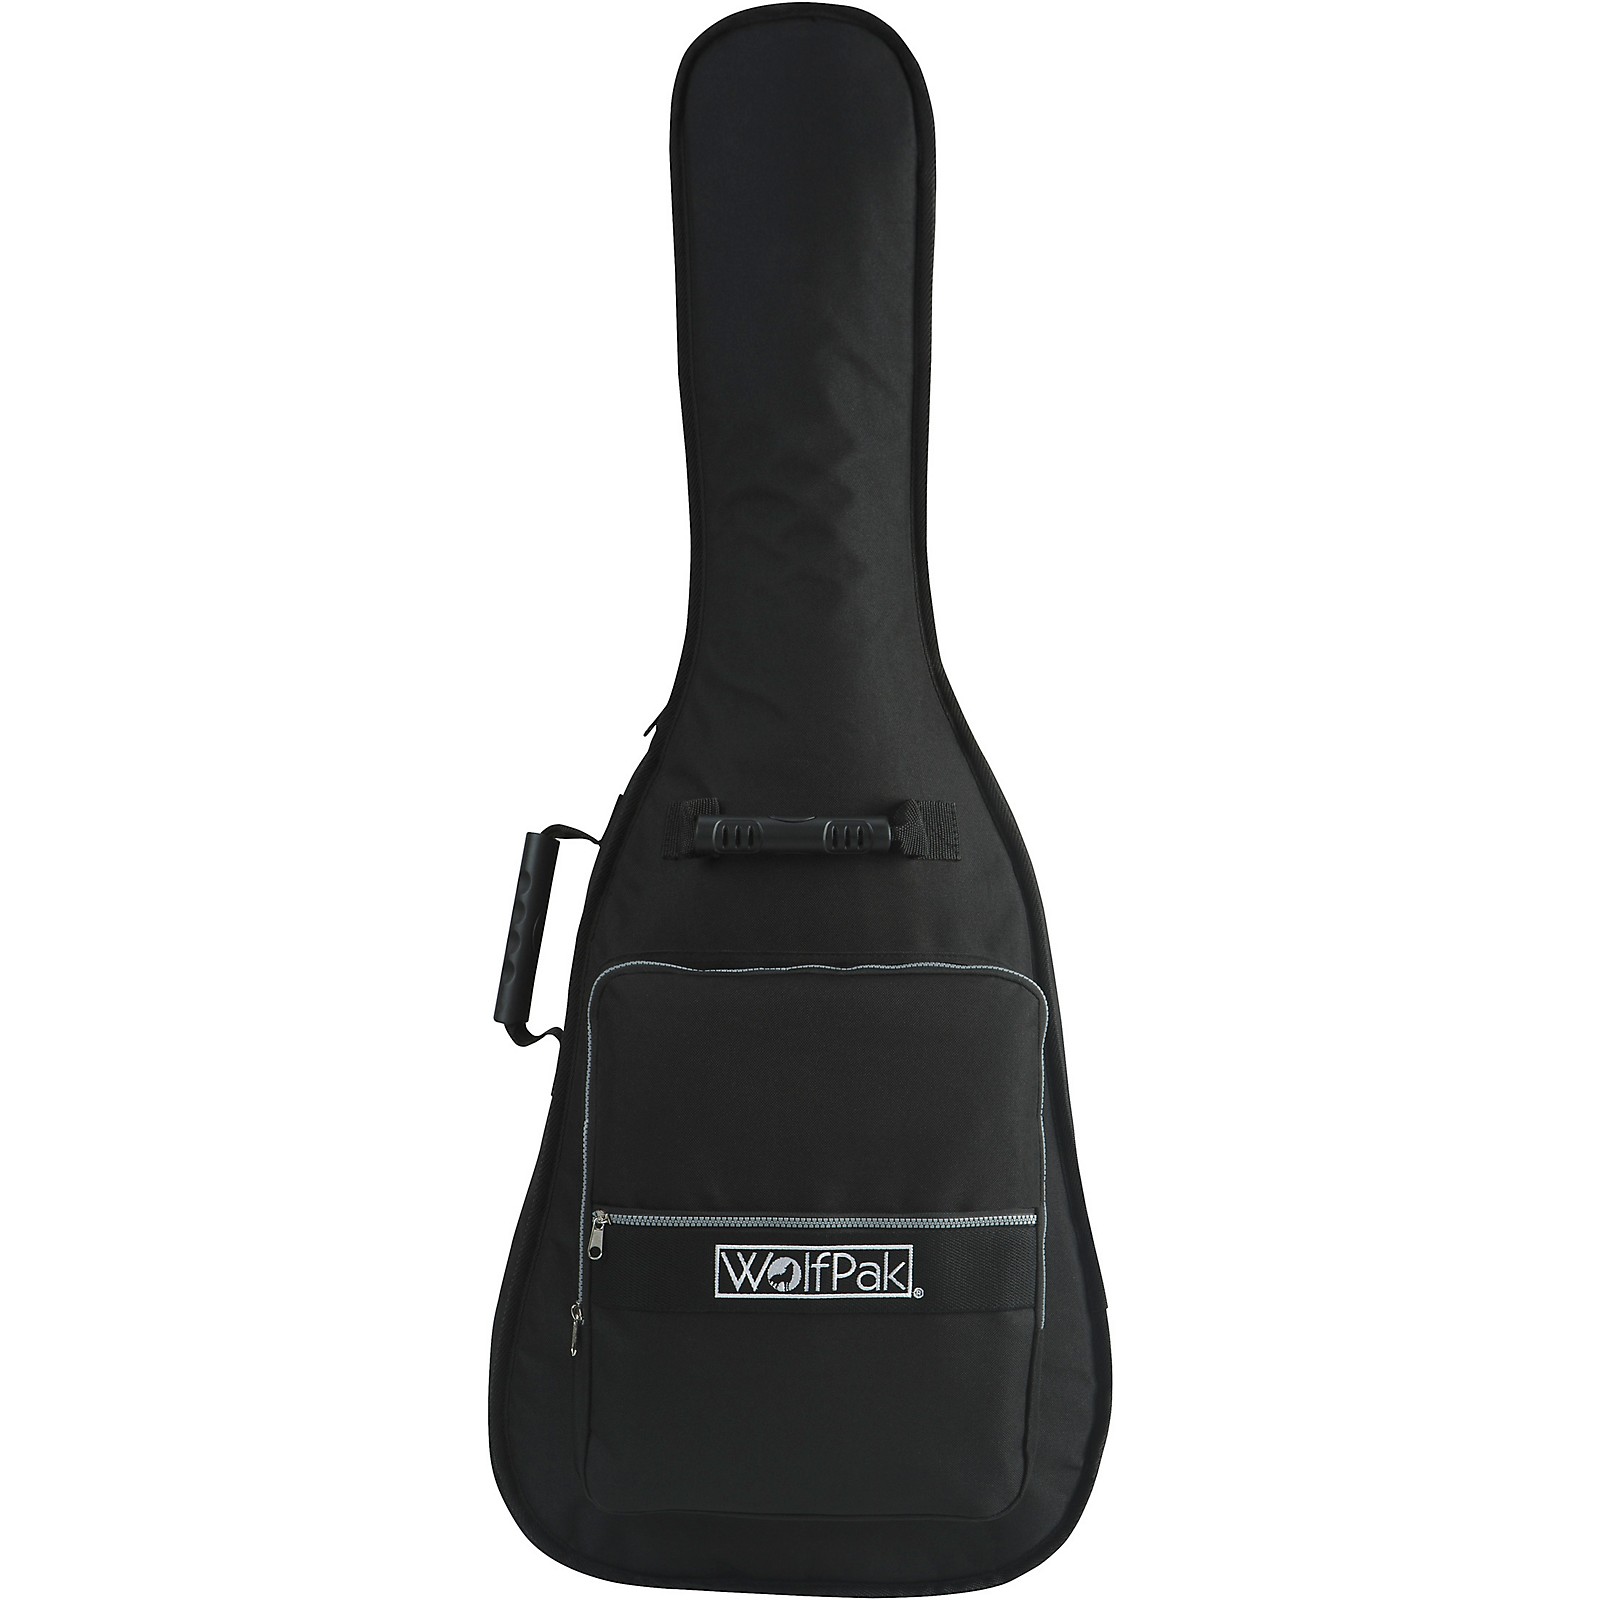 WolfPak KGWP-018 Classical Guitar Gig Bag Standard Series Black ...